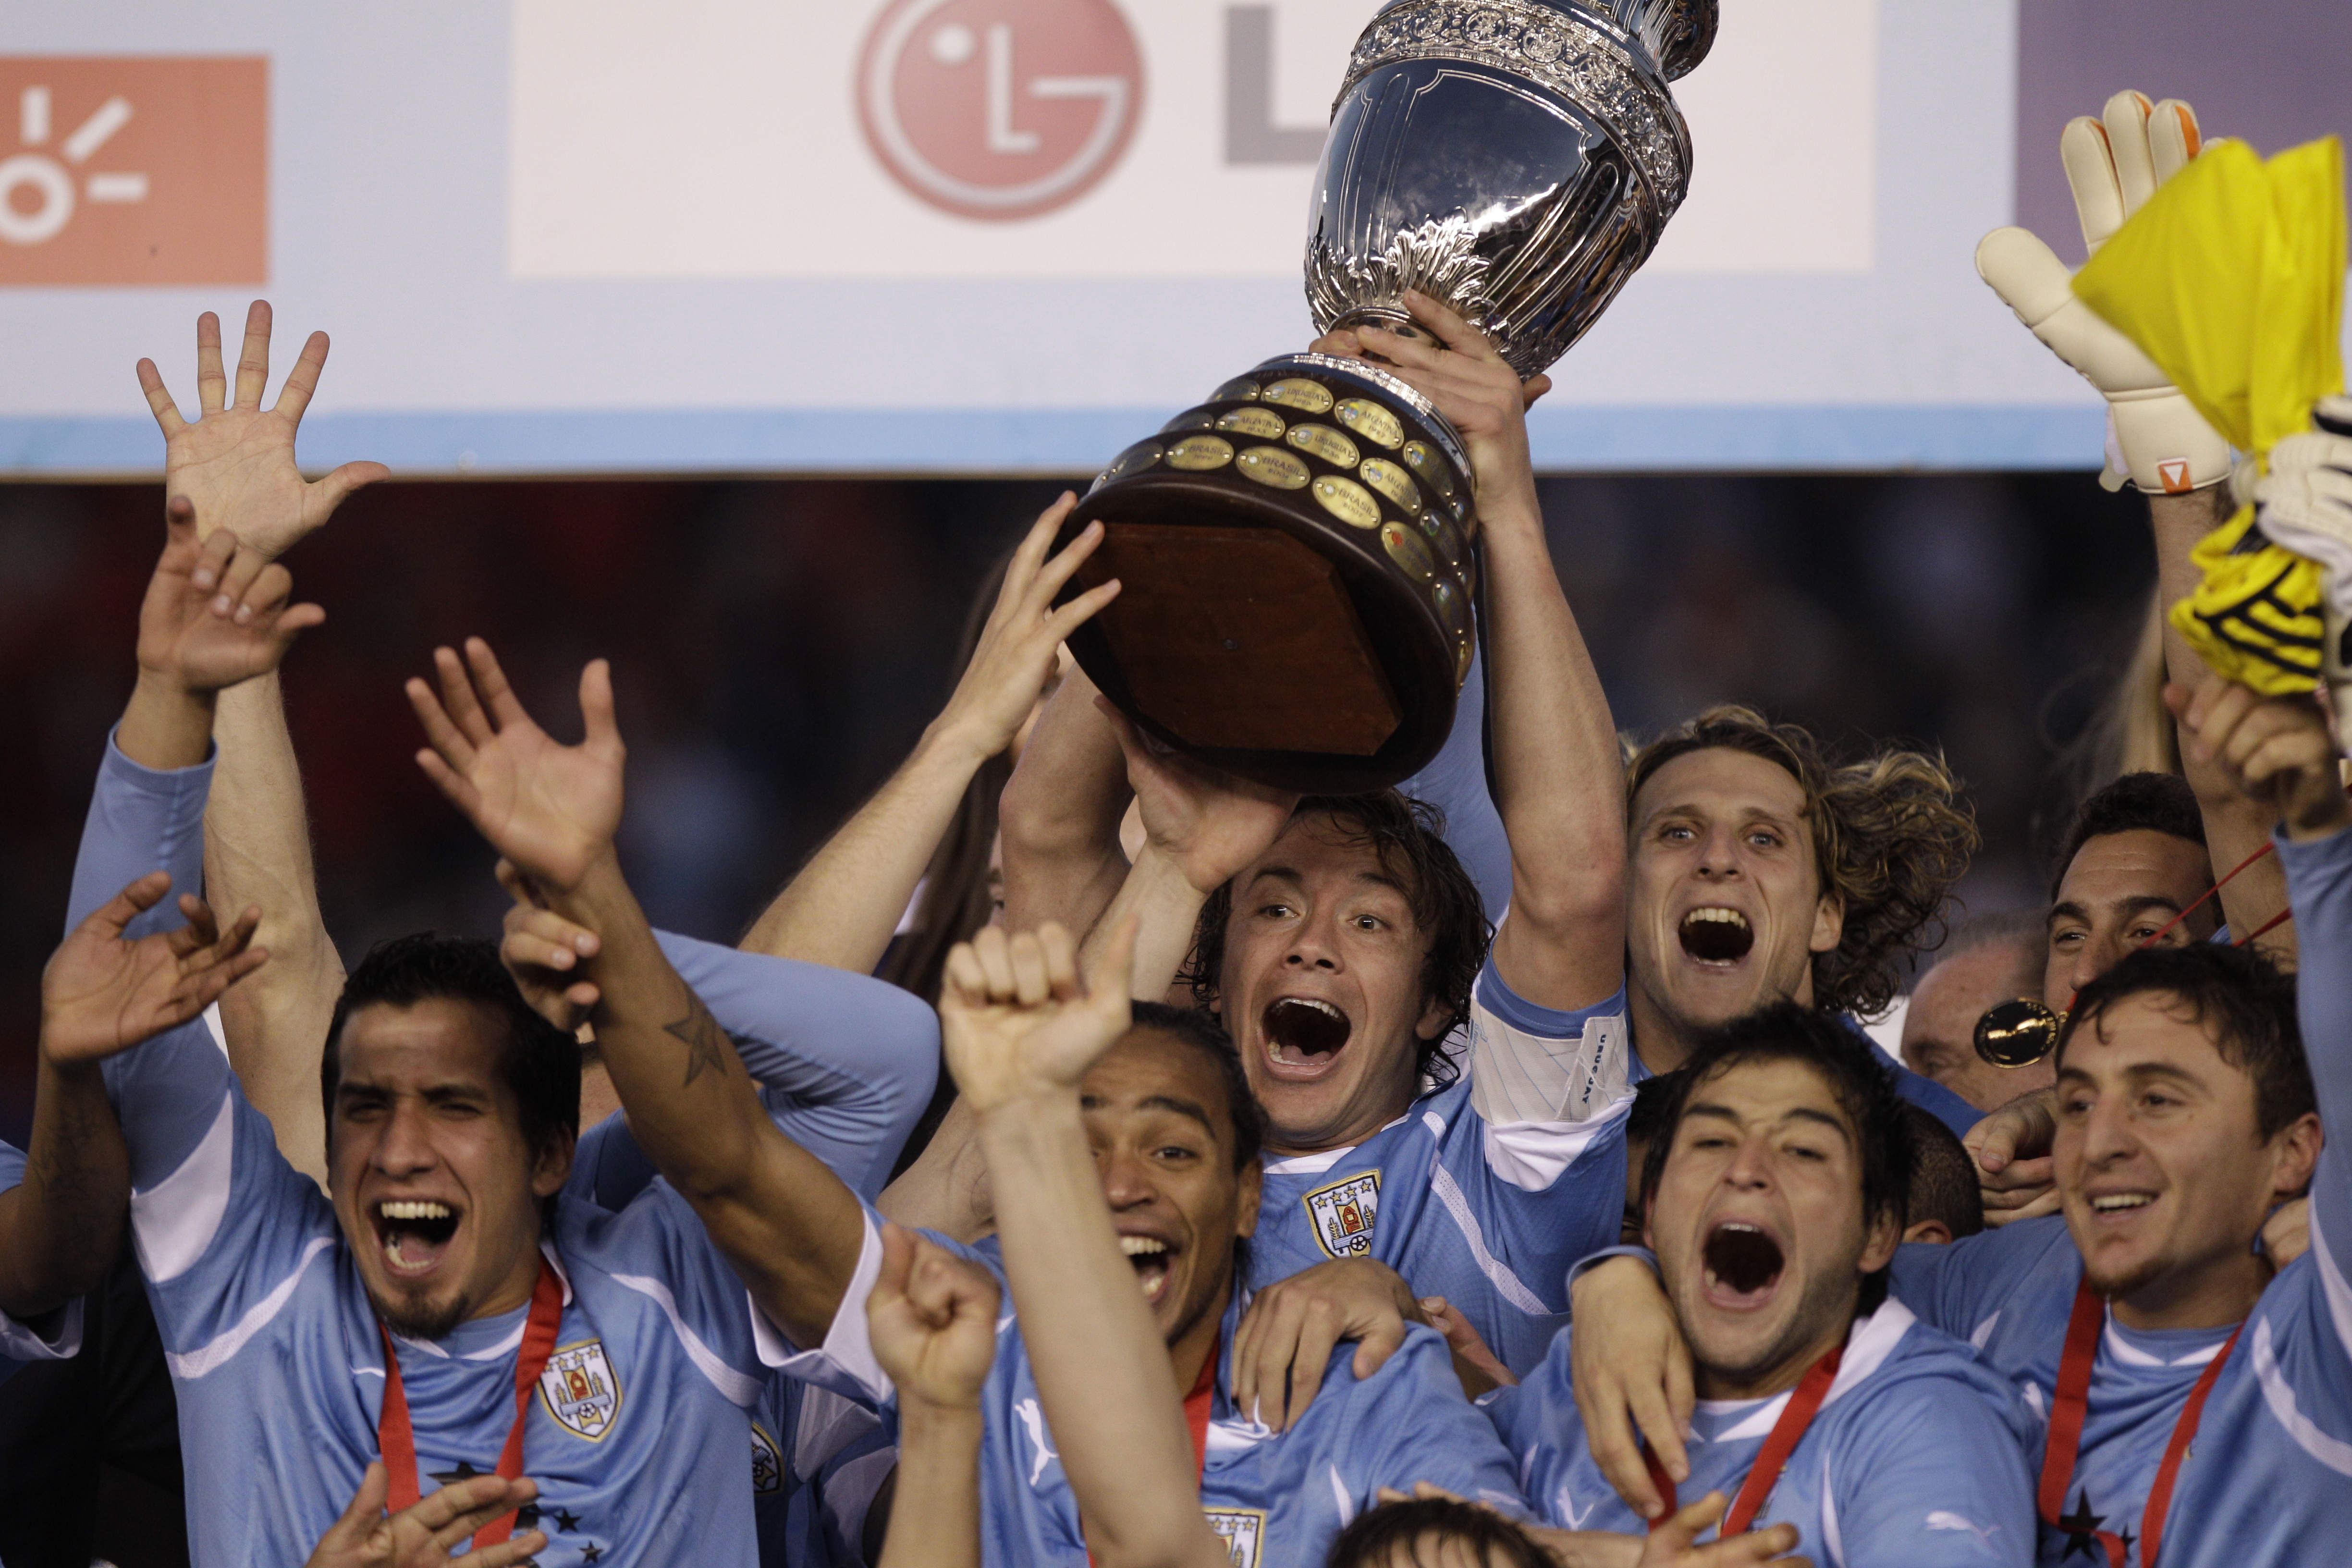 Luis Suárez, Diego Forlán och de andra stjärnorna tog hem Copa América-pokalen till sitt Uruguay efter att laget besegrat Paraguay i finalen sent på söndagskvällen. Uruguay har nu vunnit turneringen 15 gånger, flest av alla i historien.